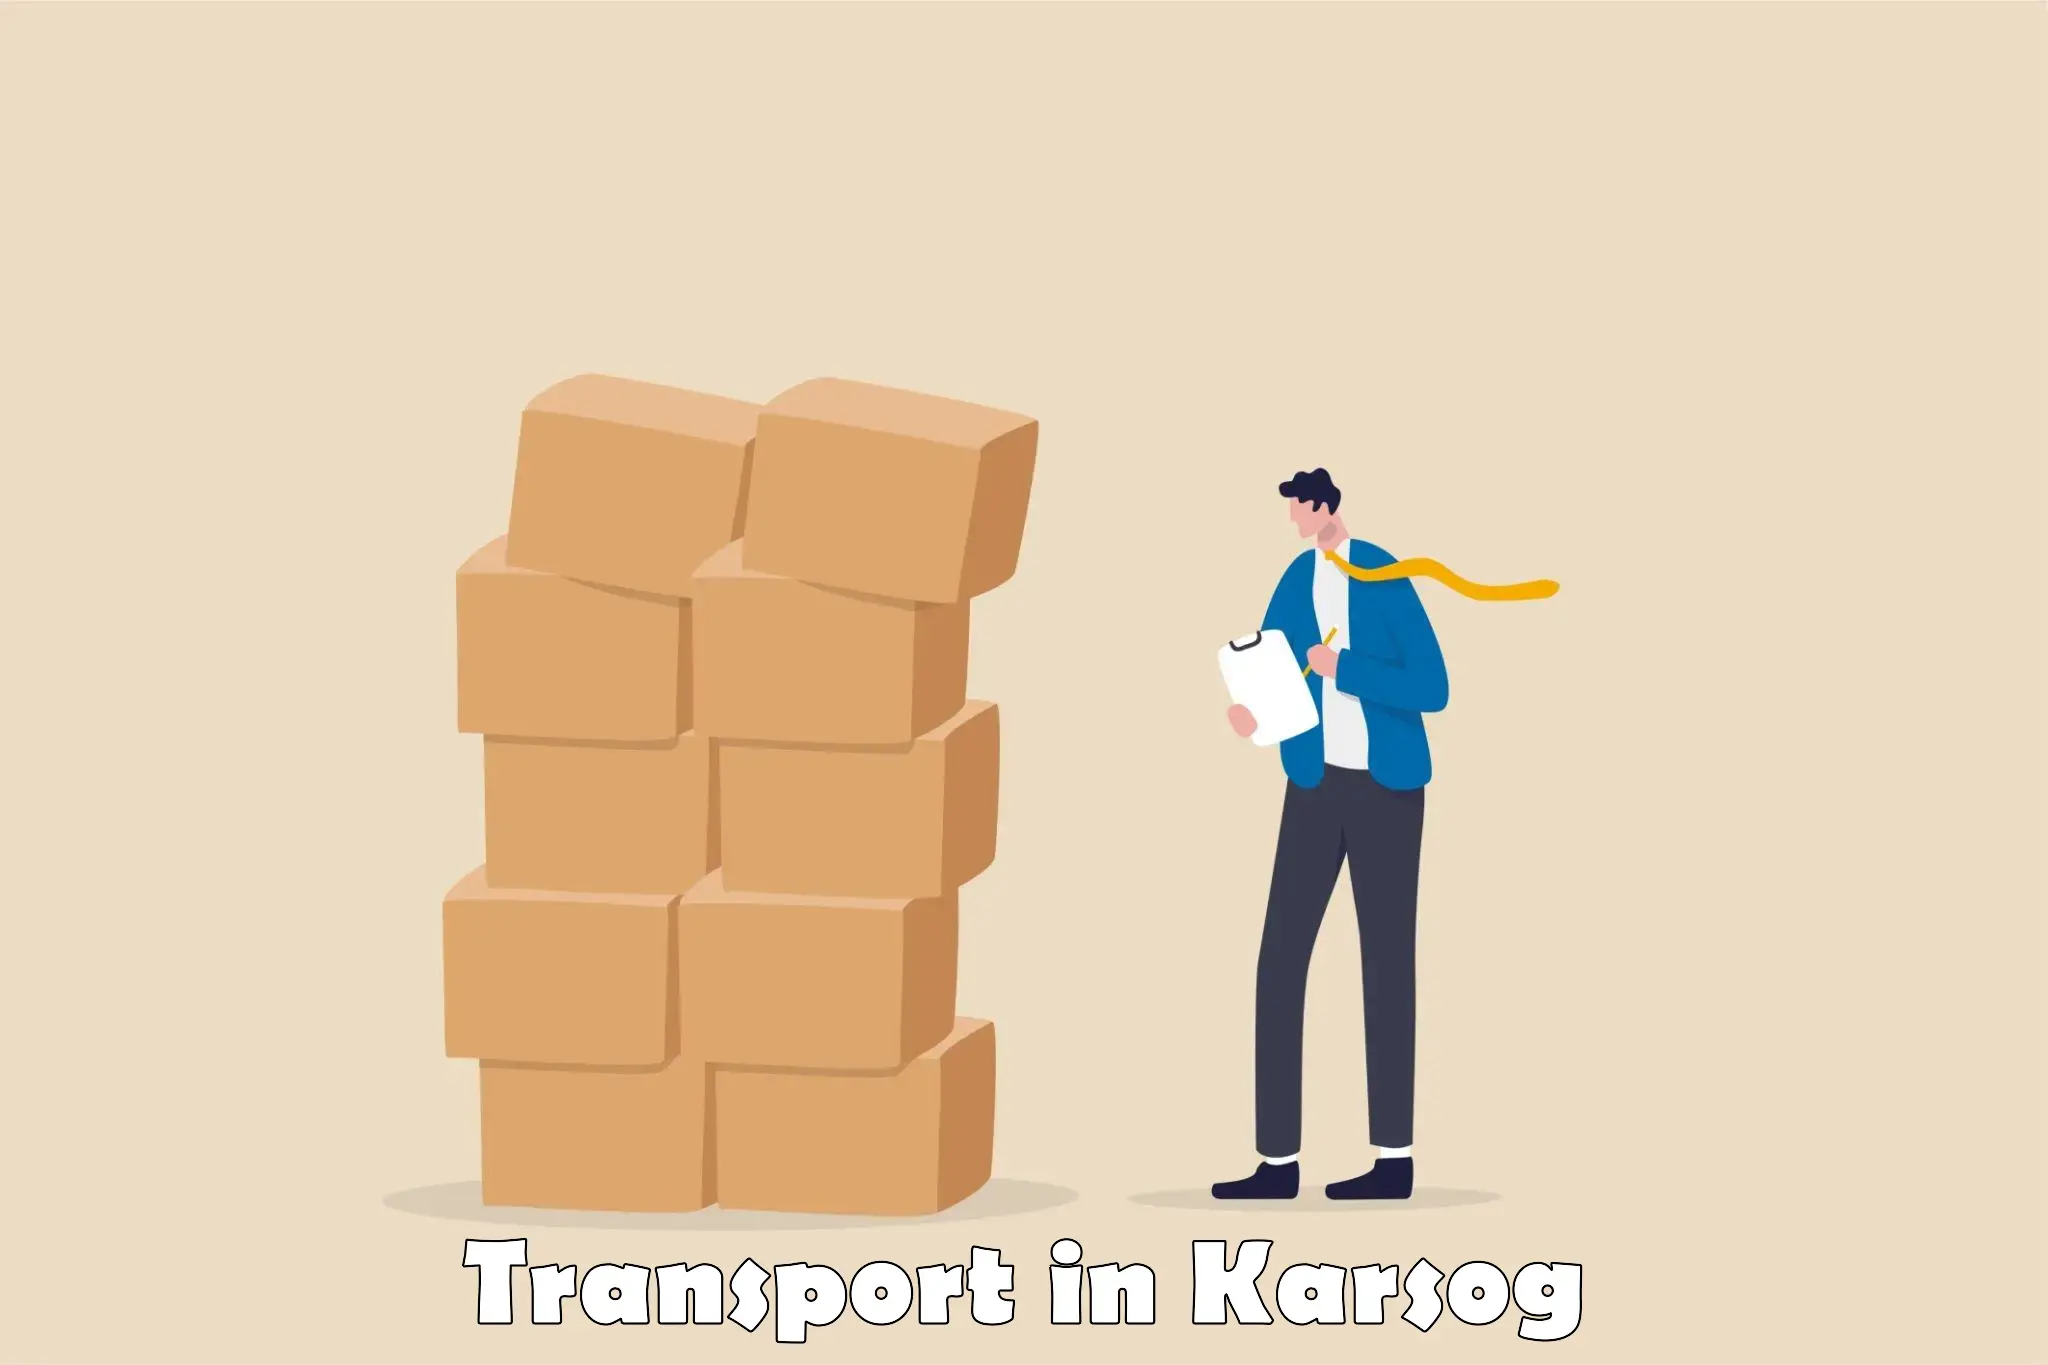 Vehicle parcel service in Karsog